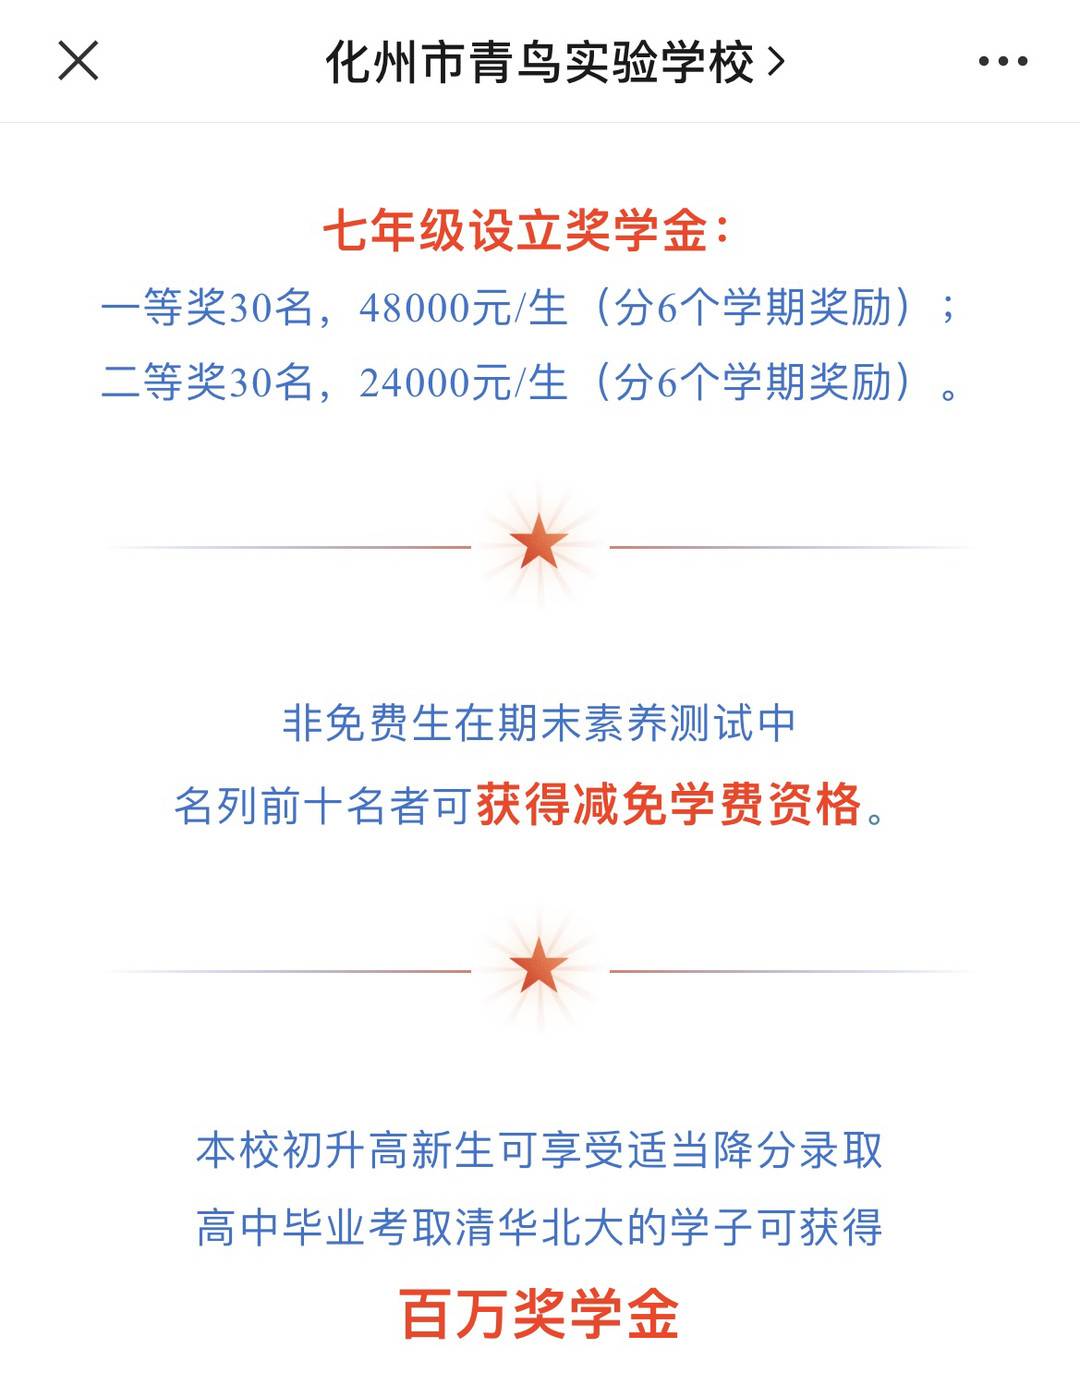 化州市青鸟实验学校公众号发布的2022年秋季招生简章显示，考取清华北大的学子可获百万奖学金。